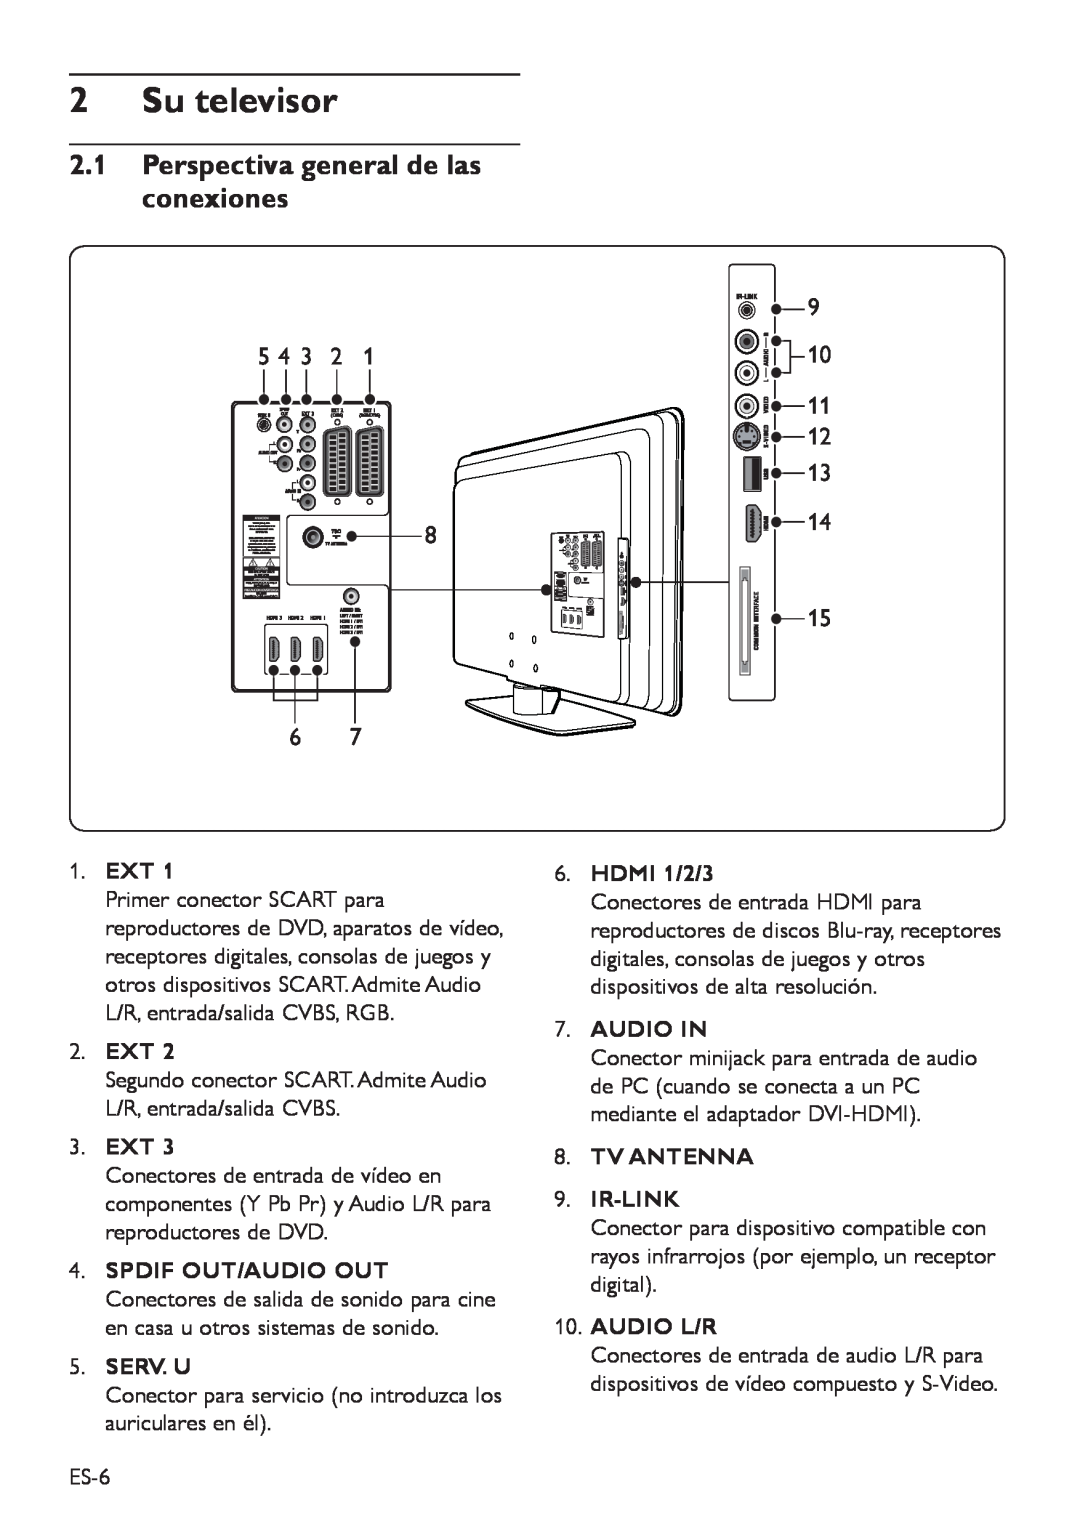 Philips DFU-DEC2008 Su televisor, 2.1Perspectiva general de las conexiones, 9 10, 1.EXT, 2.EXT, 3.EXT, Serv. U, HDMI 1/2/3 